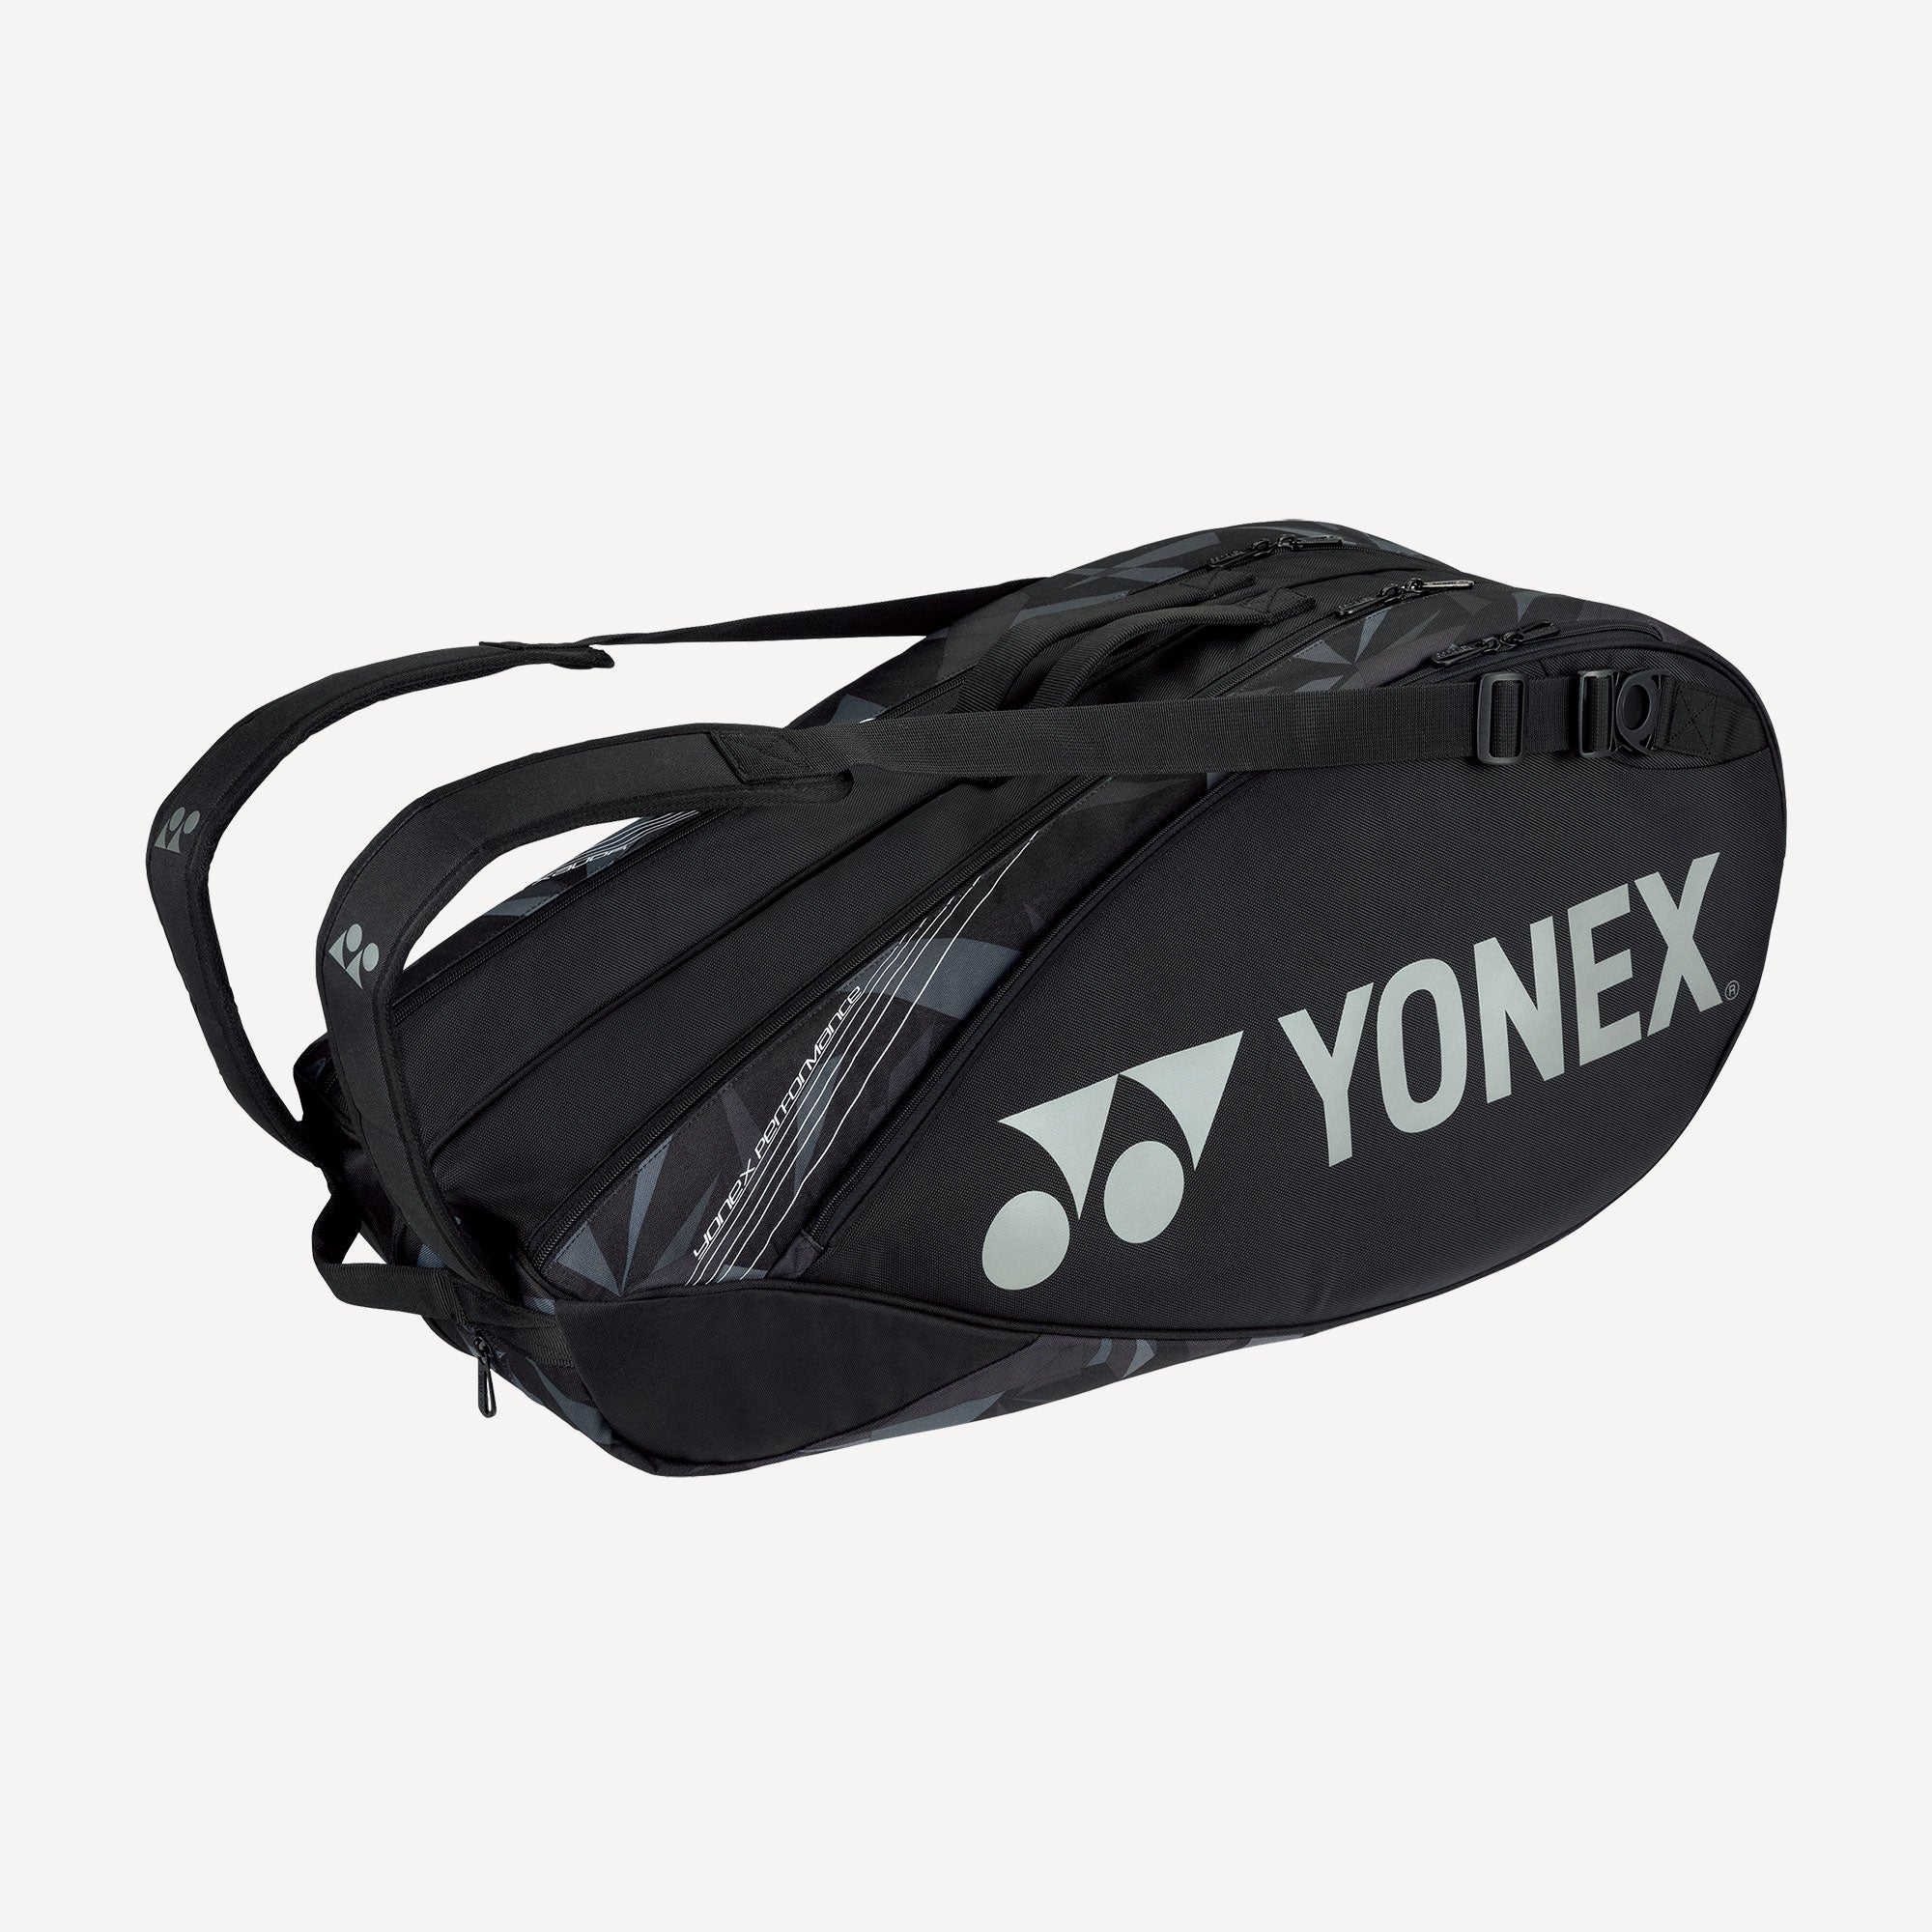 Yonex Pro 6R Tennis Bag Black (1)